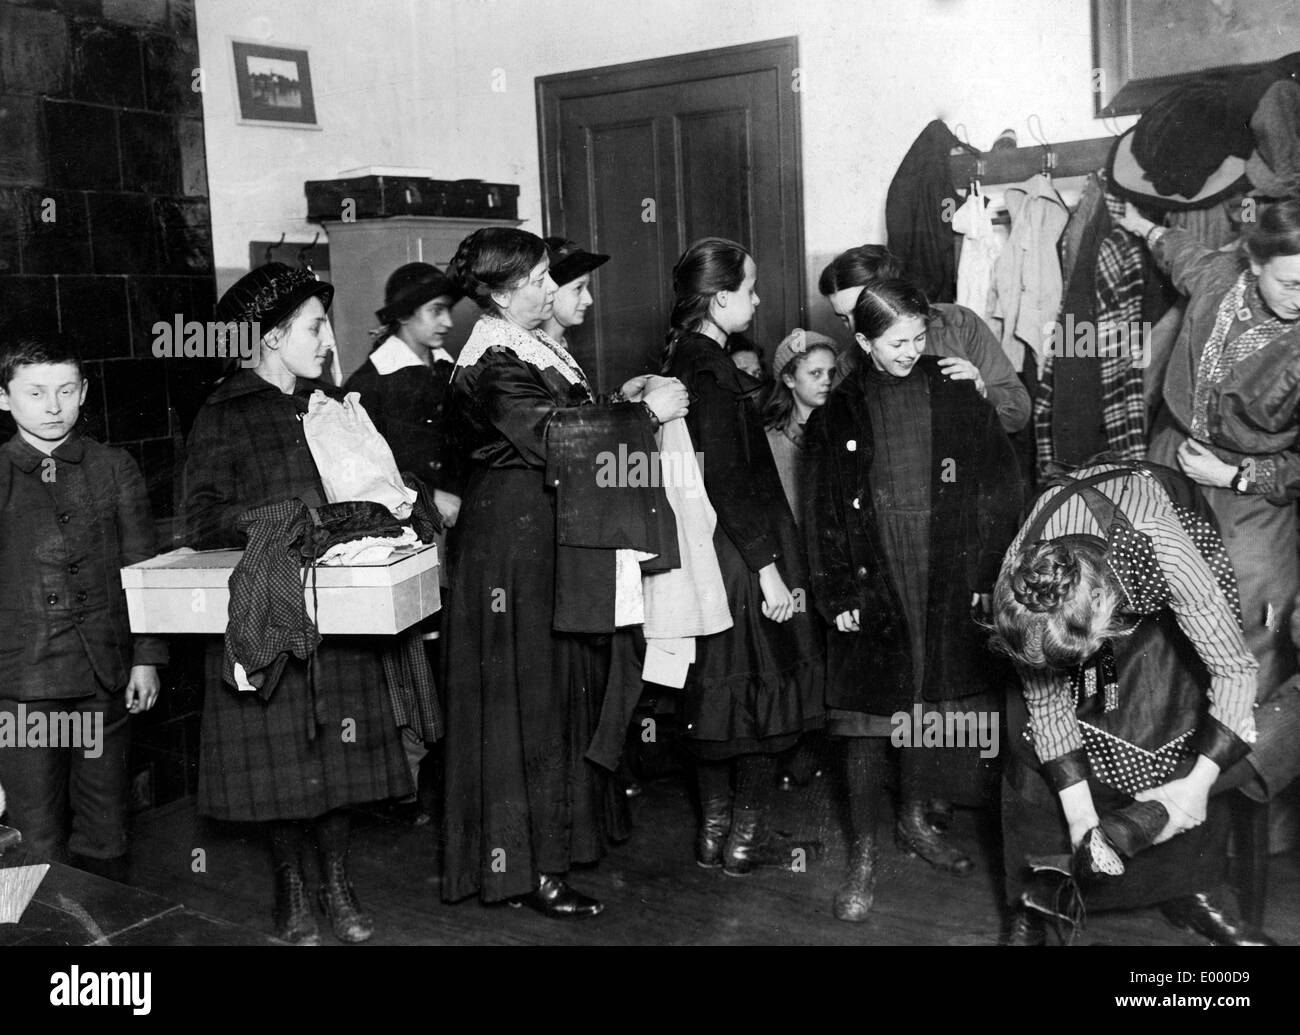 La distribution de vêtements et chaussures, 1916 Banque D'Images